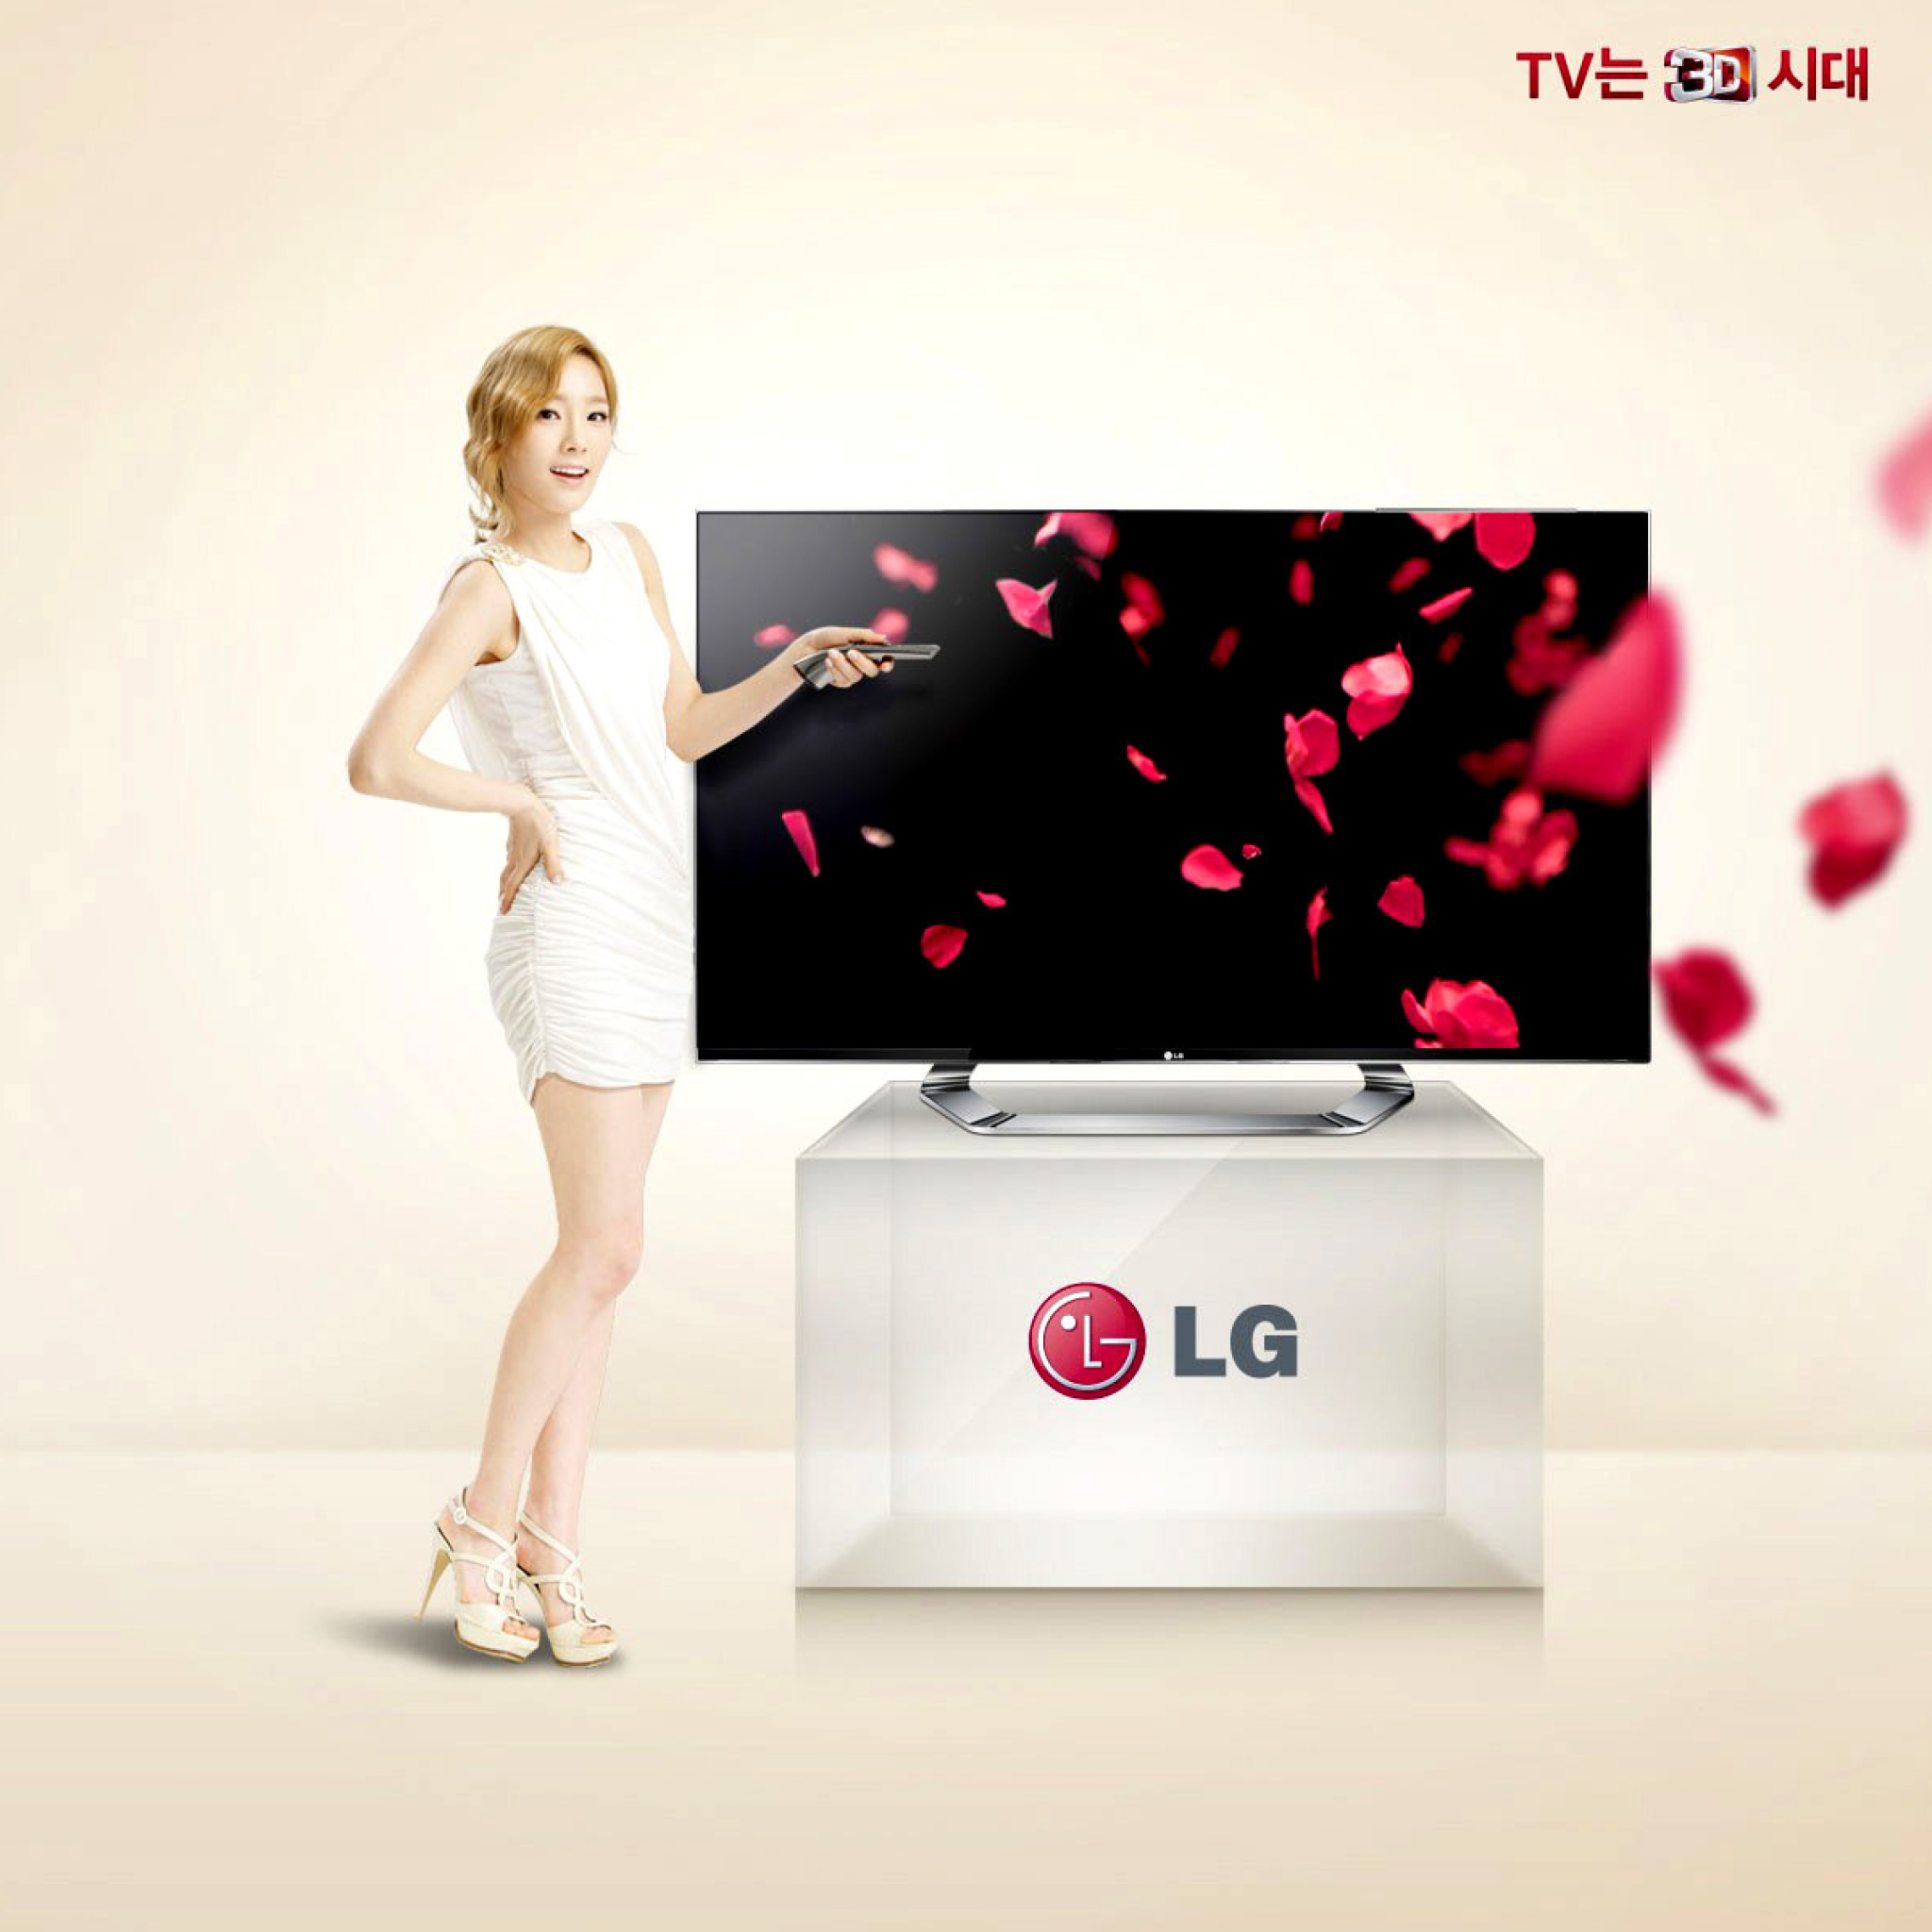 Lg supports ru. Реклама телевизора. LG реклама. LG TV реклама. Рекламный баннер телевизор.